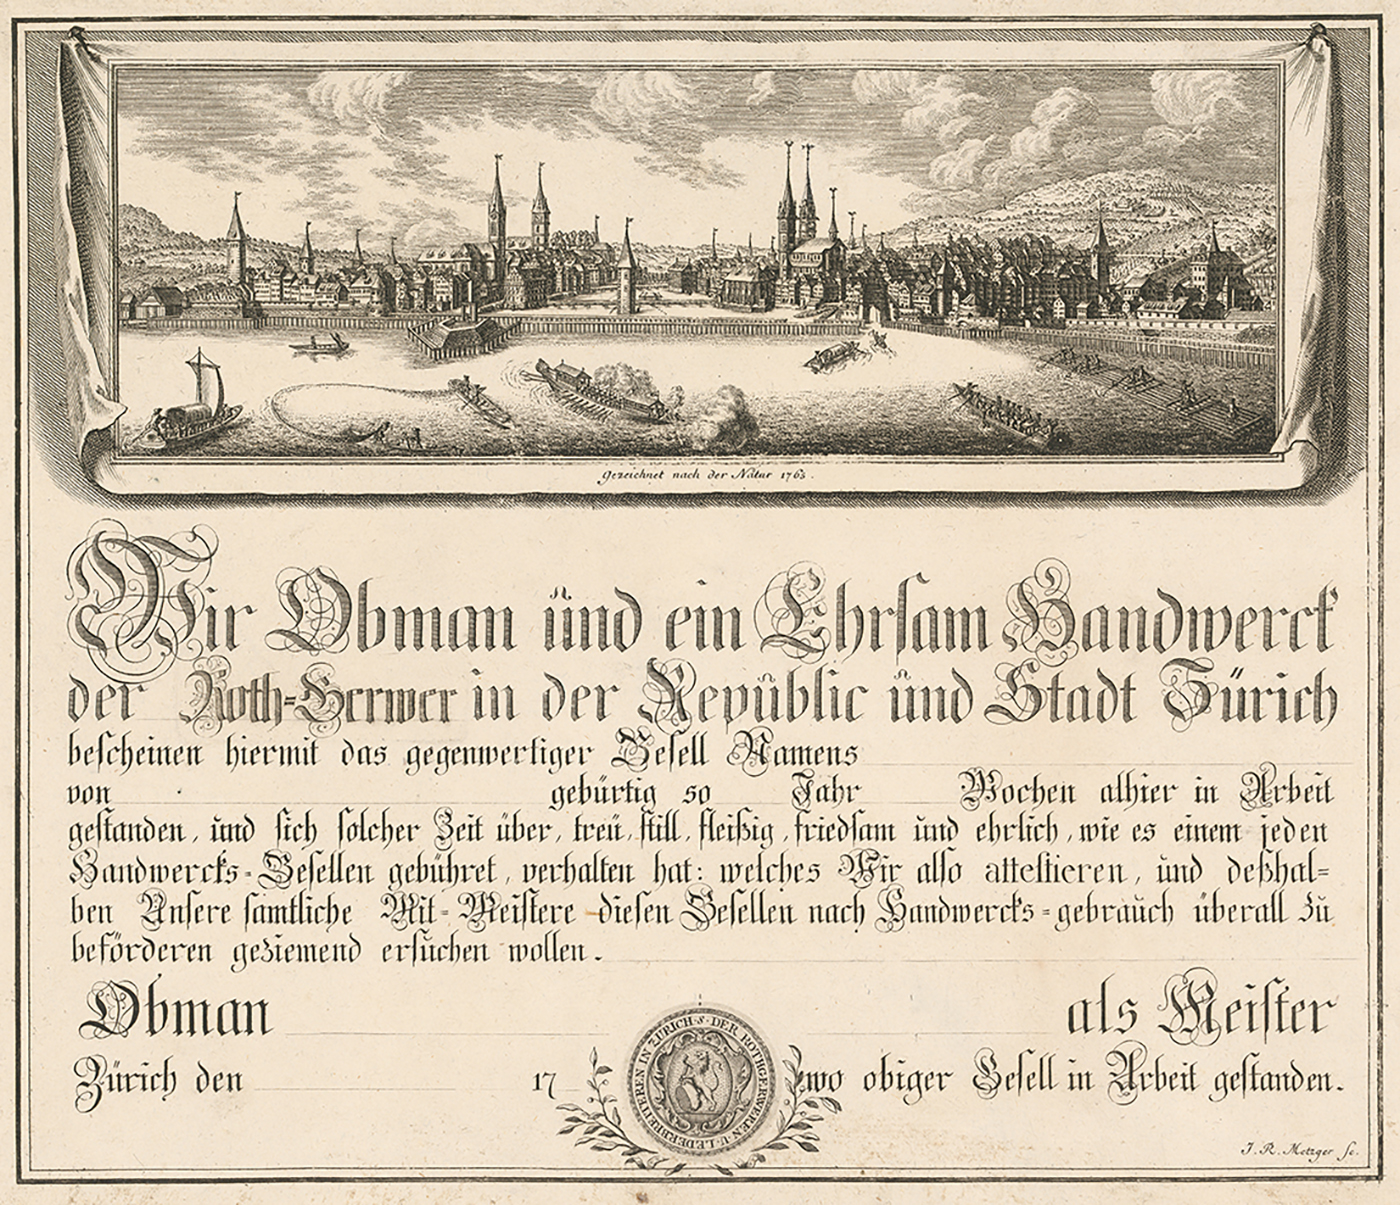 Gesellenbrief-Formular der Zürcher Rotgerber, gezeichnet von Johann Rudolf Mezger, 1765. (Bild: ZB Zürich, STF II, 28)